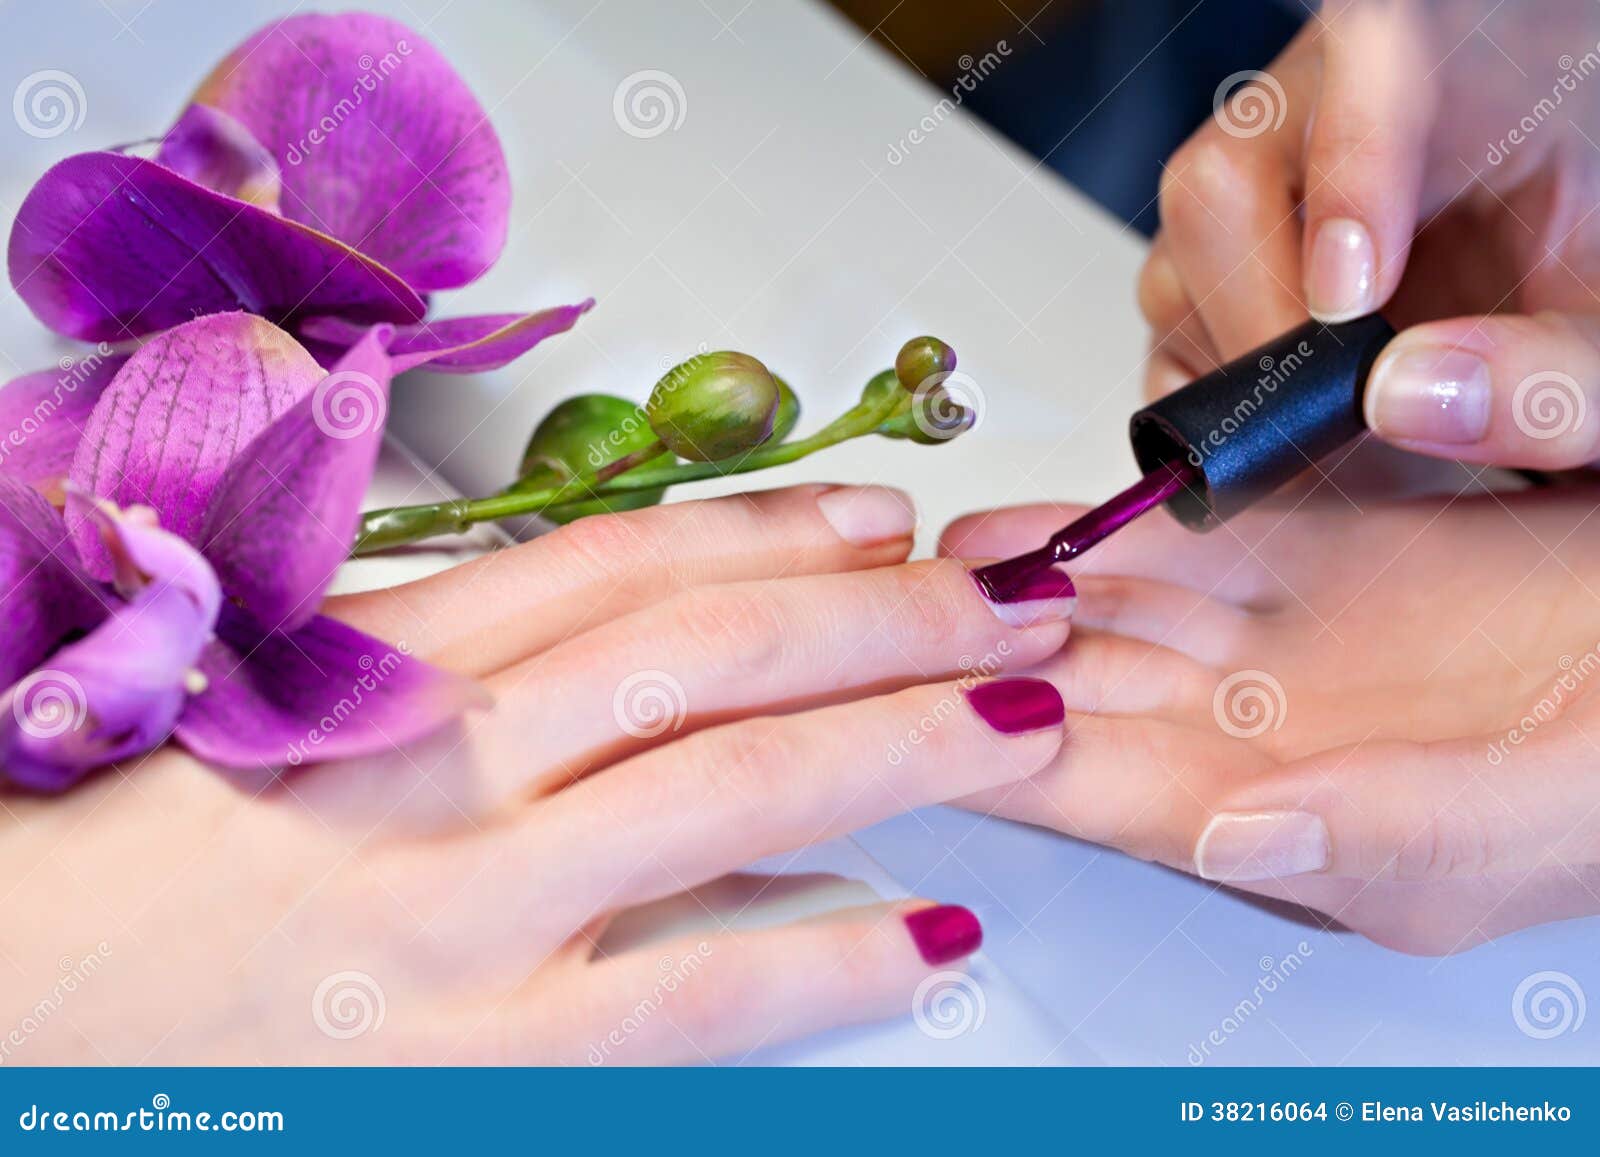 woman applying nail varnish to finger nails